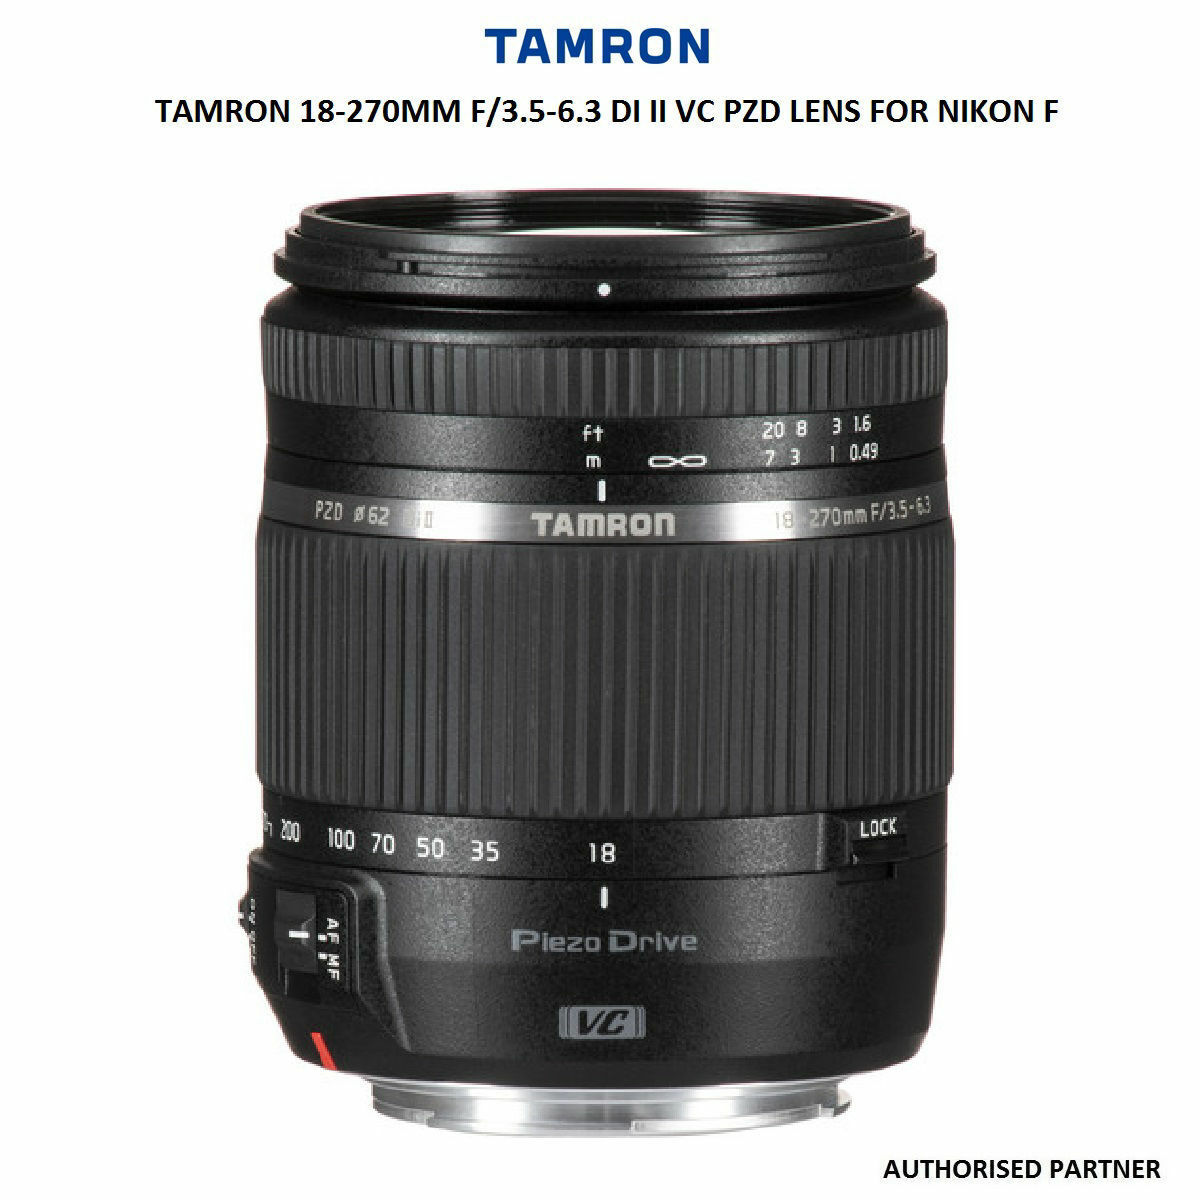 TAMRON 18-270mm F3.5-6.3 DiII VC - レンズ(ズーム)